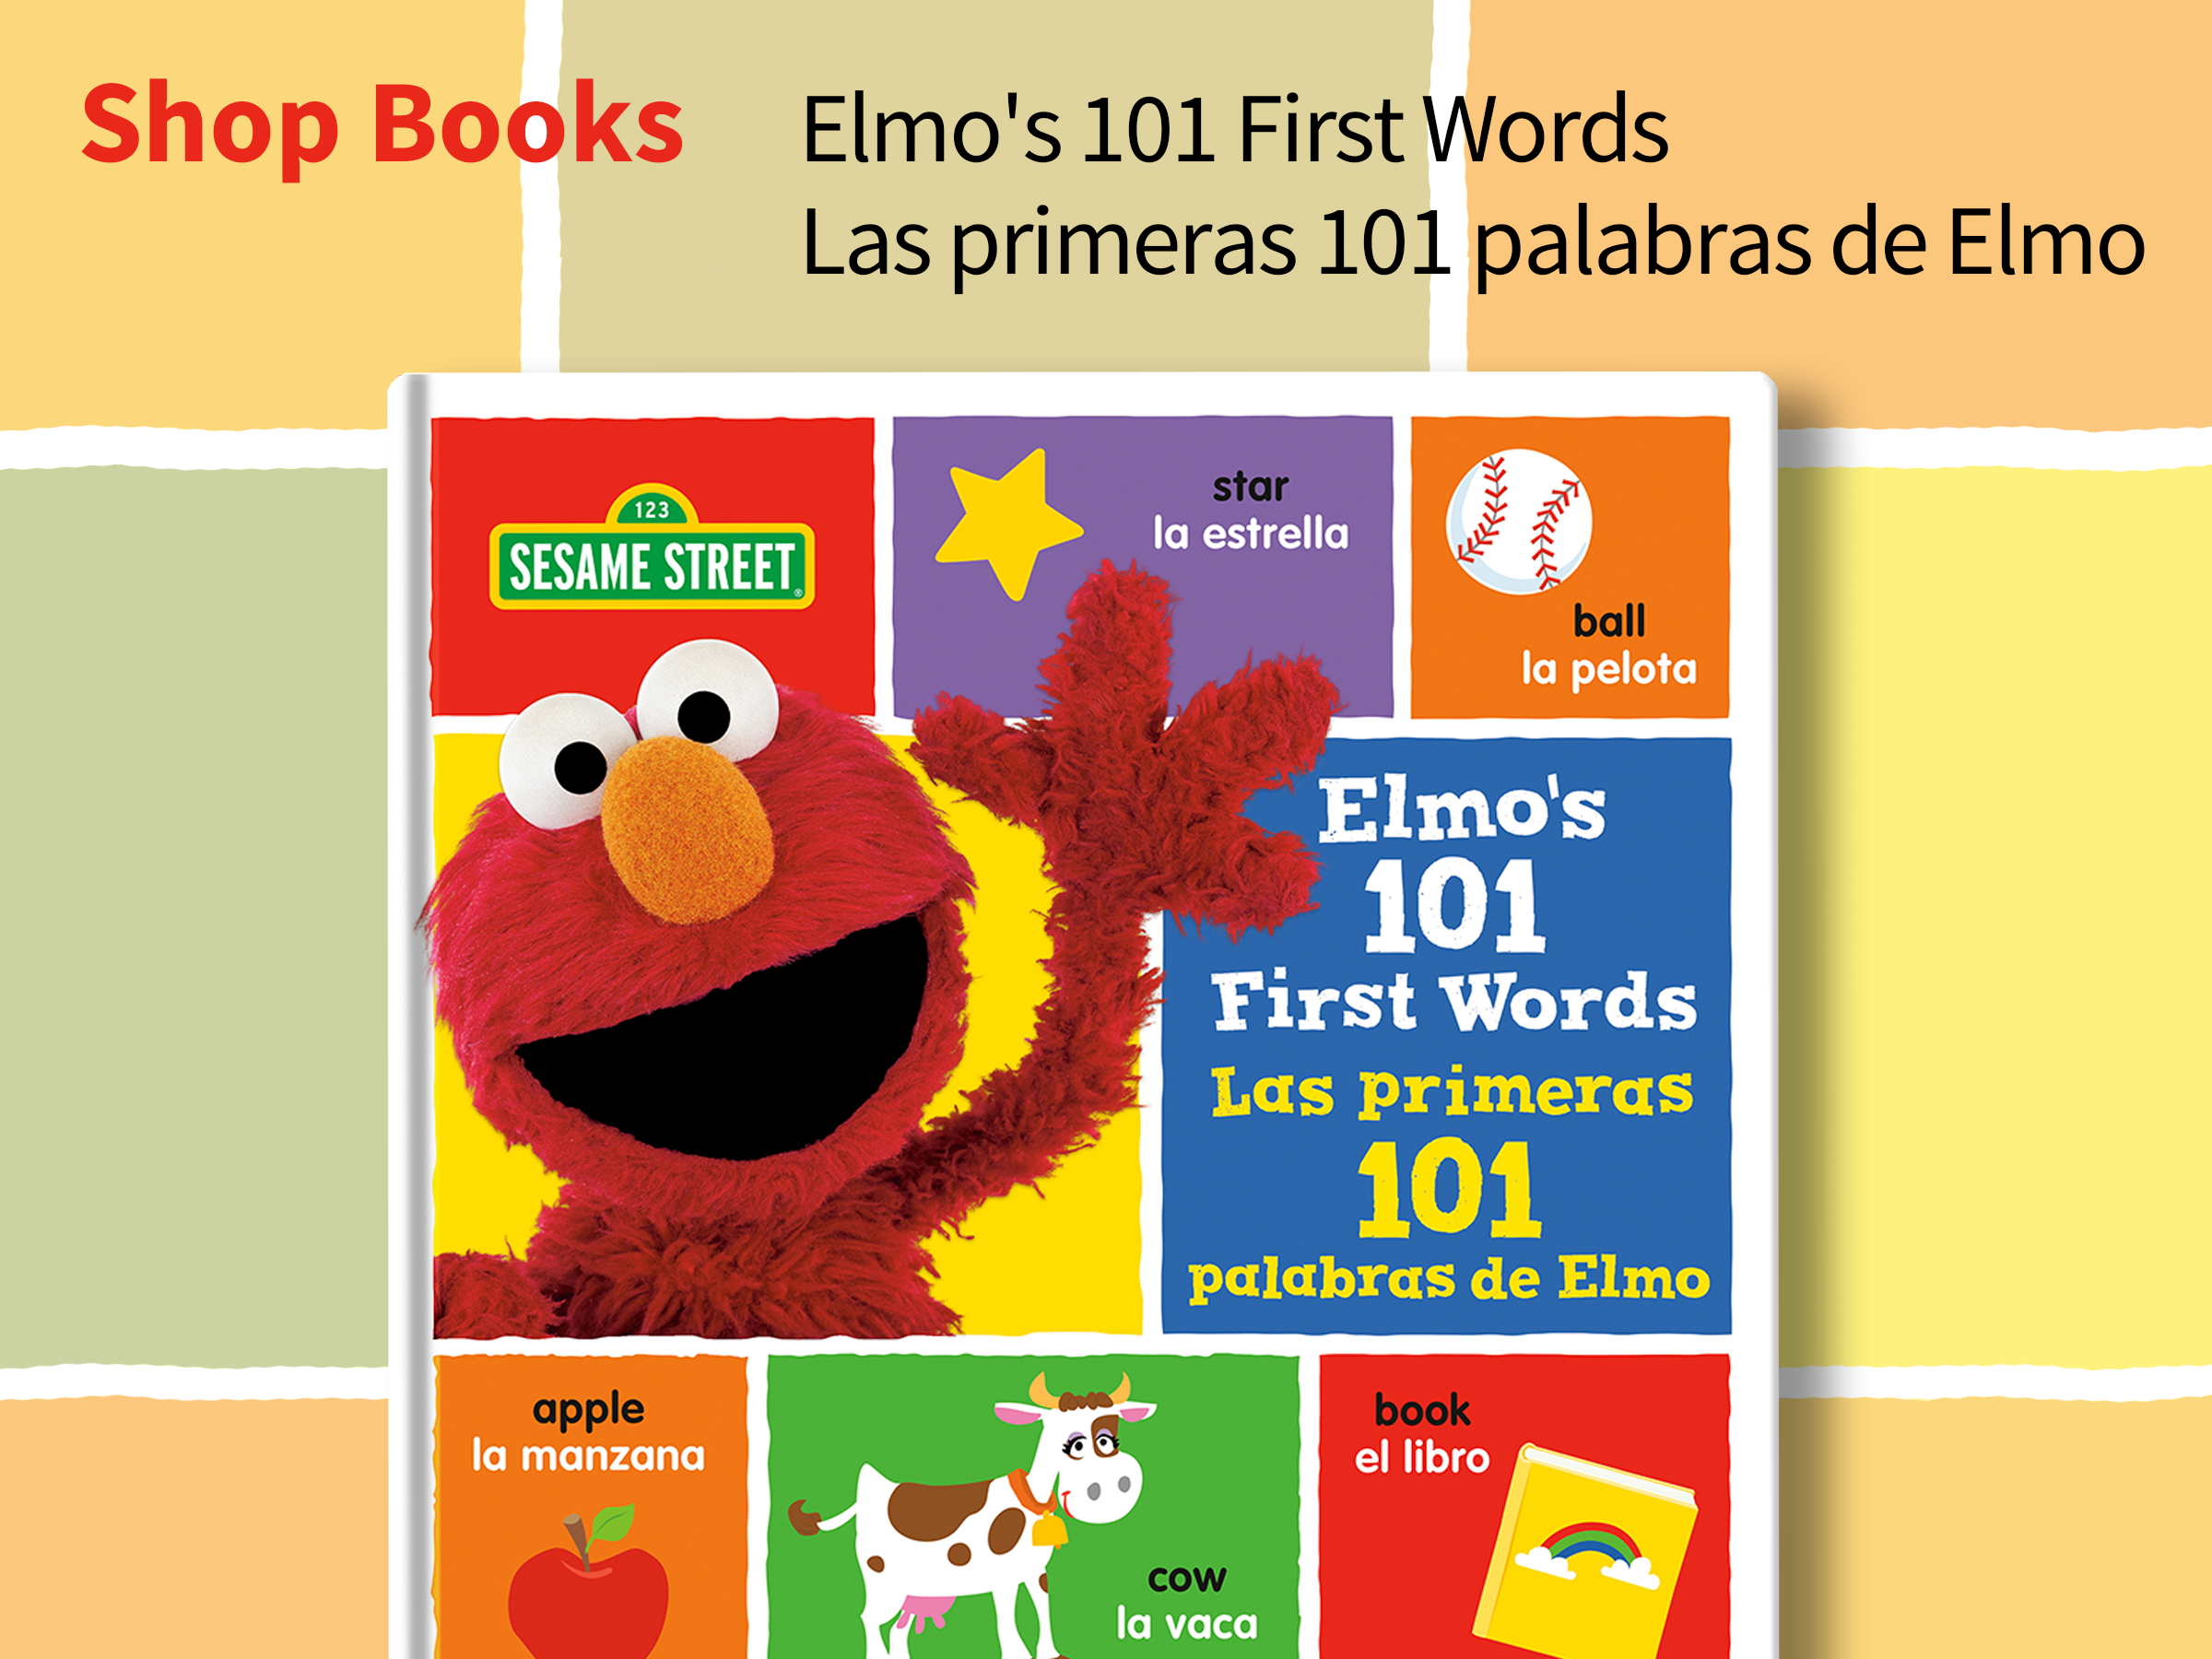 Elmo's 101 First Words/Las primeras 101 palabras de Elmo